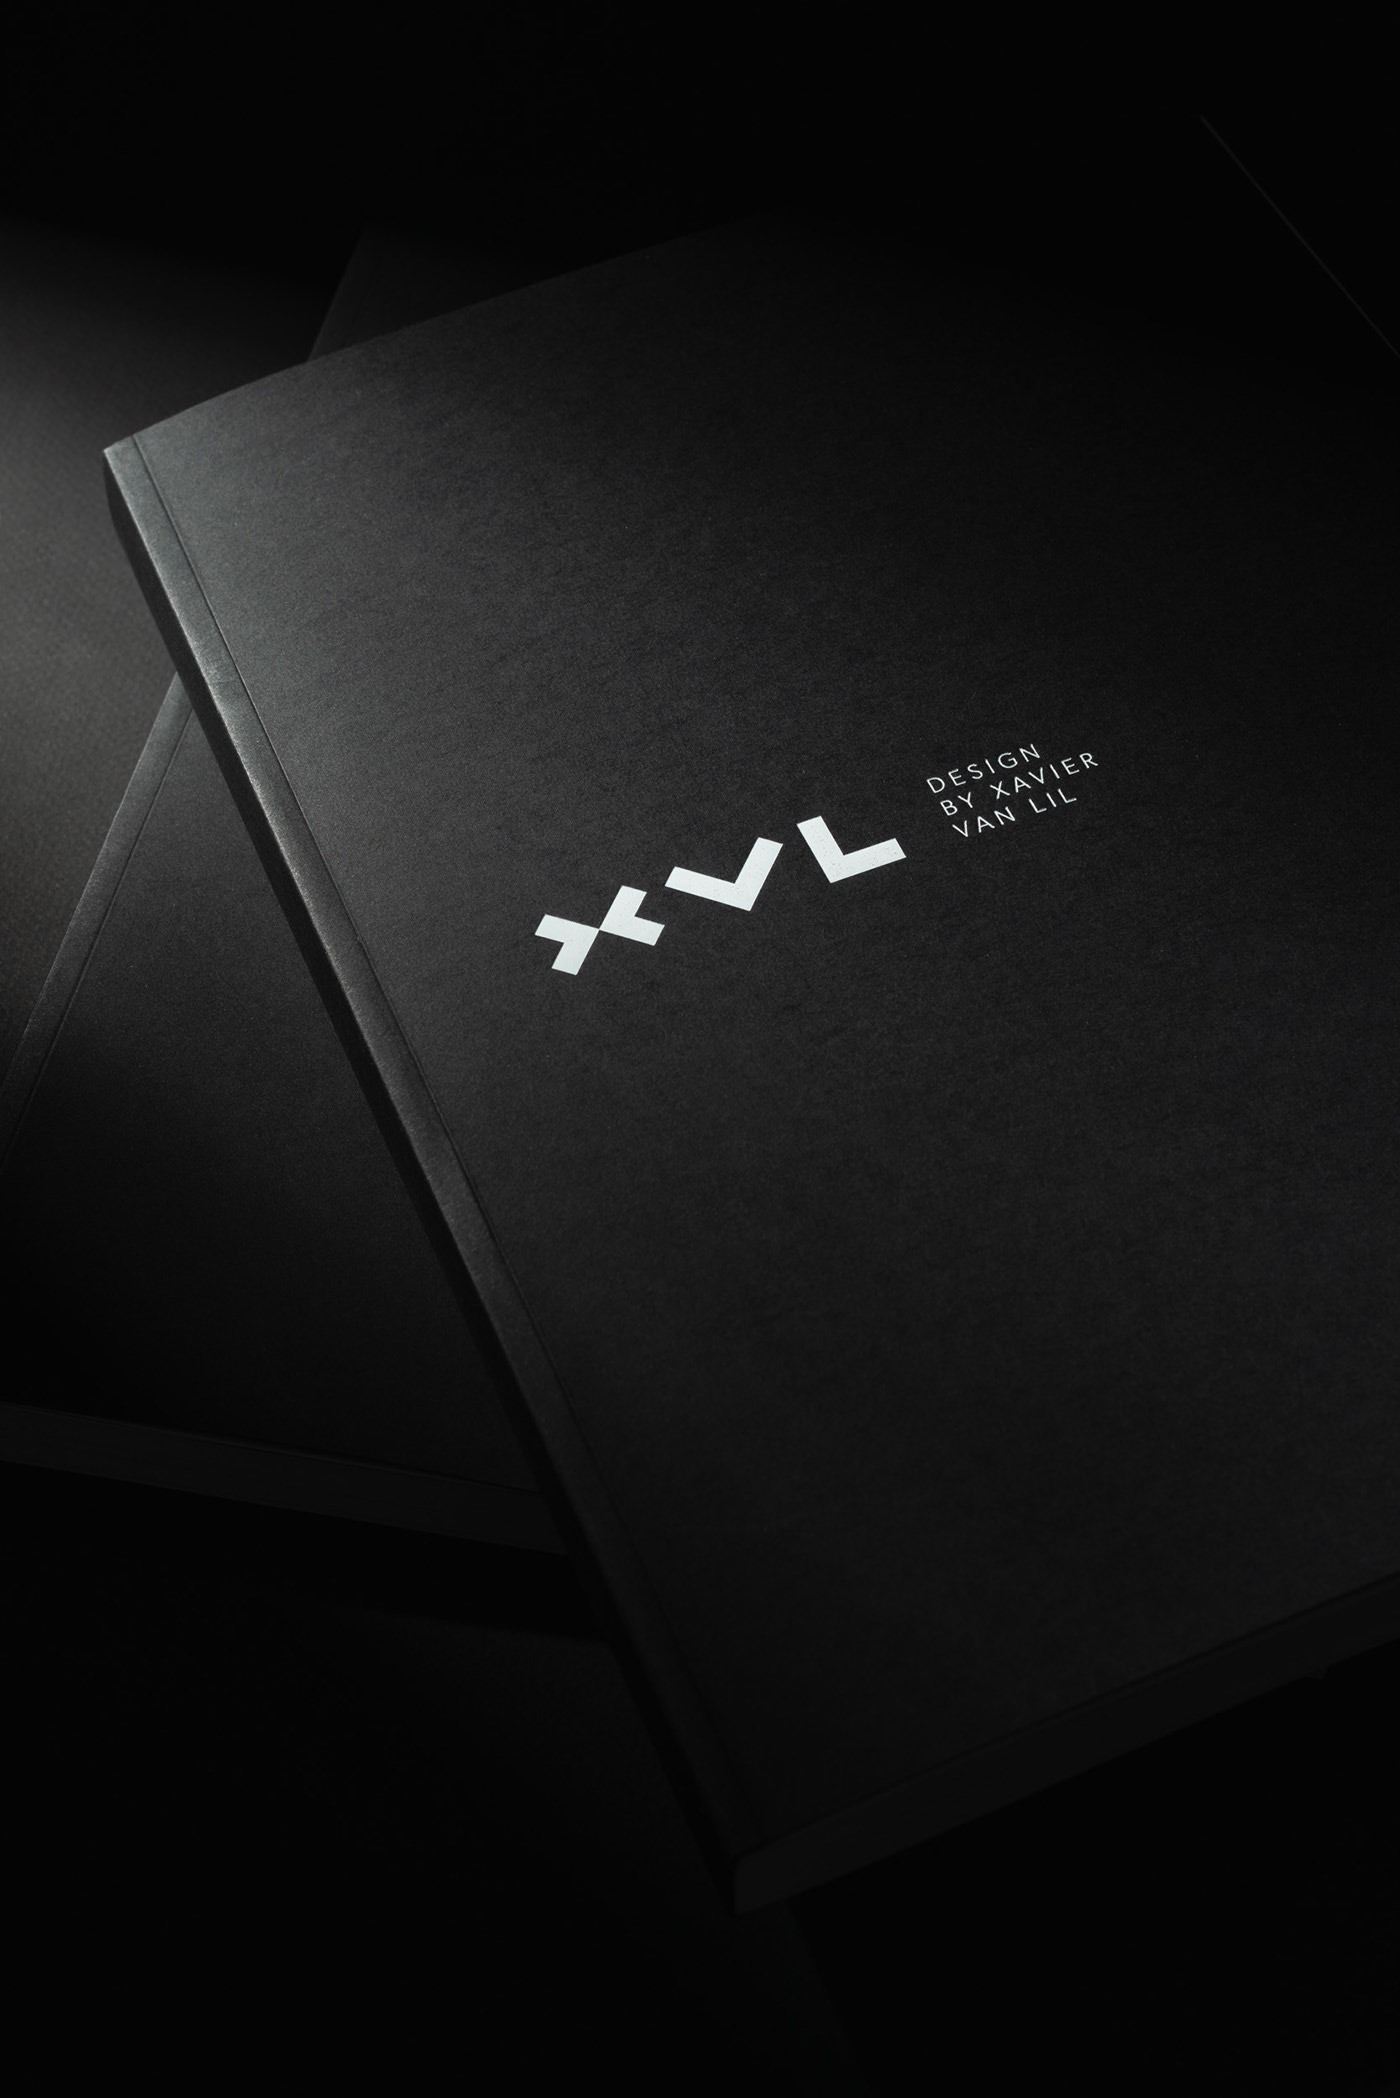 工业设计师Xavier Van Lil个人品牌形象设计